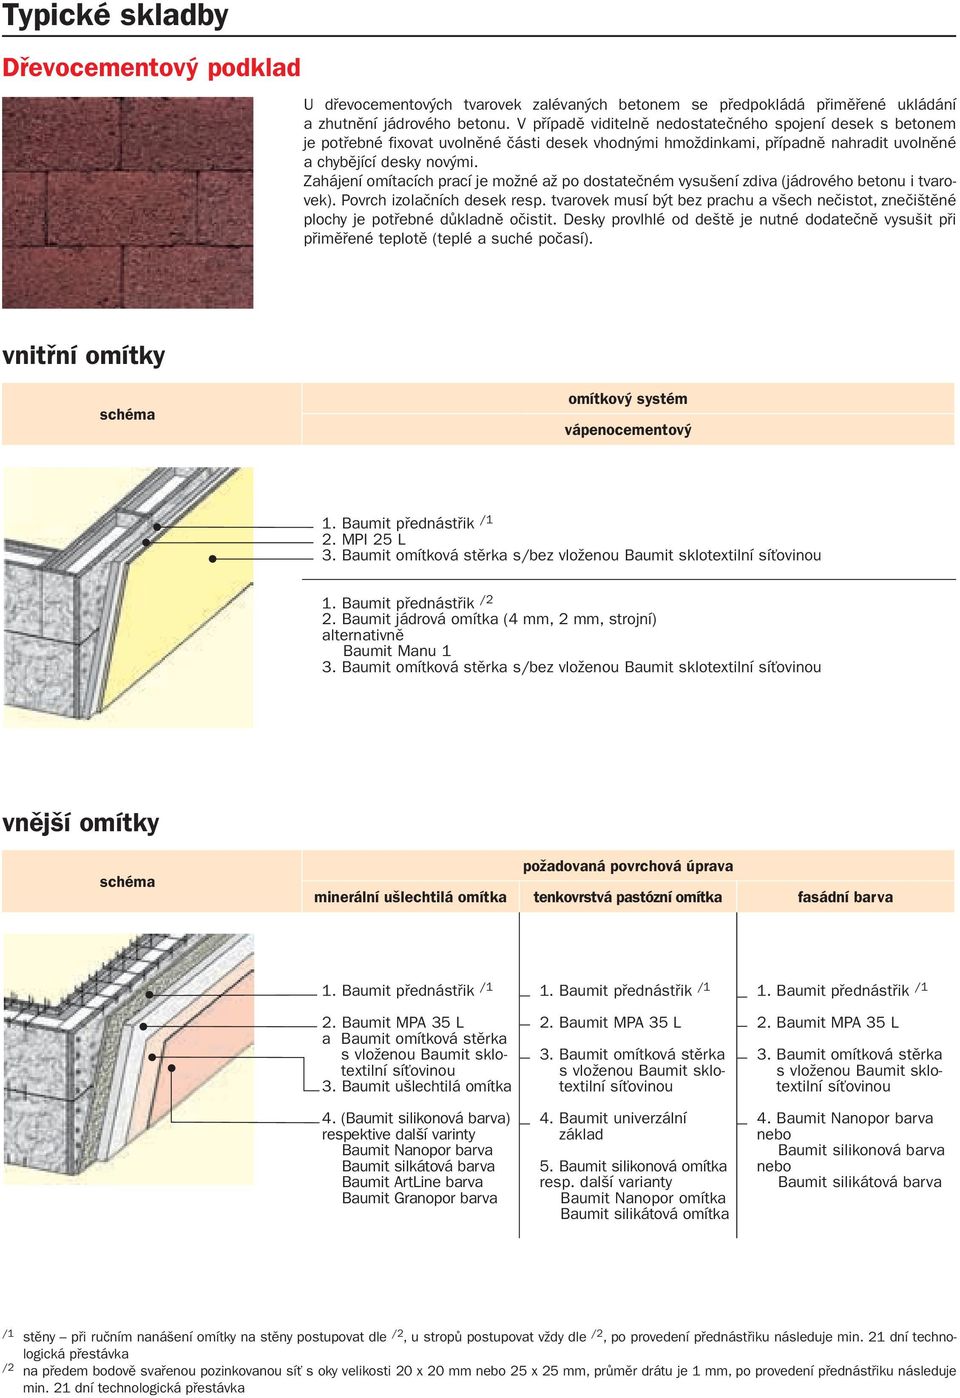 Zahájení omítacích prací je možné až po dostatečném vysušení zdiva (jádrového betonu i tvarovek). Povrch izolačních desek resp.